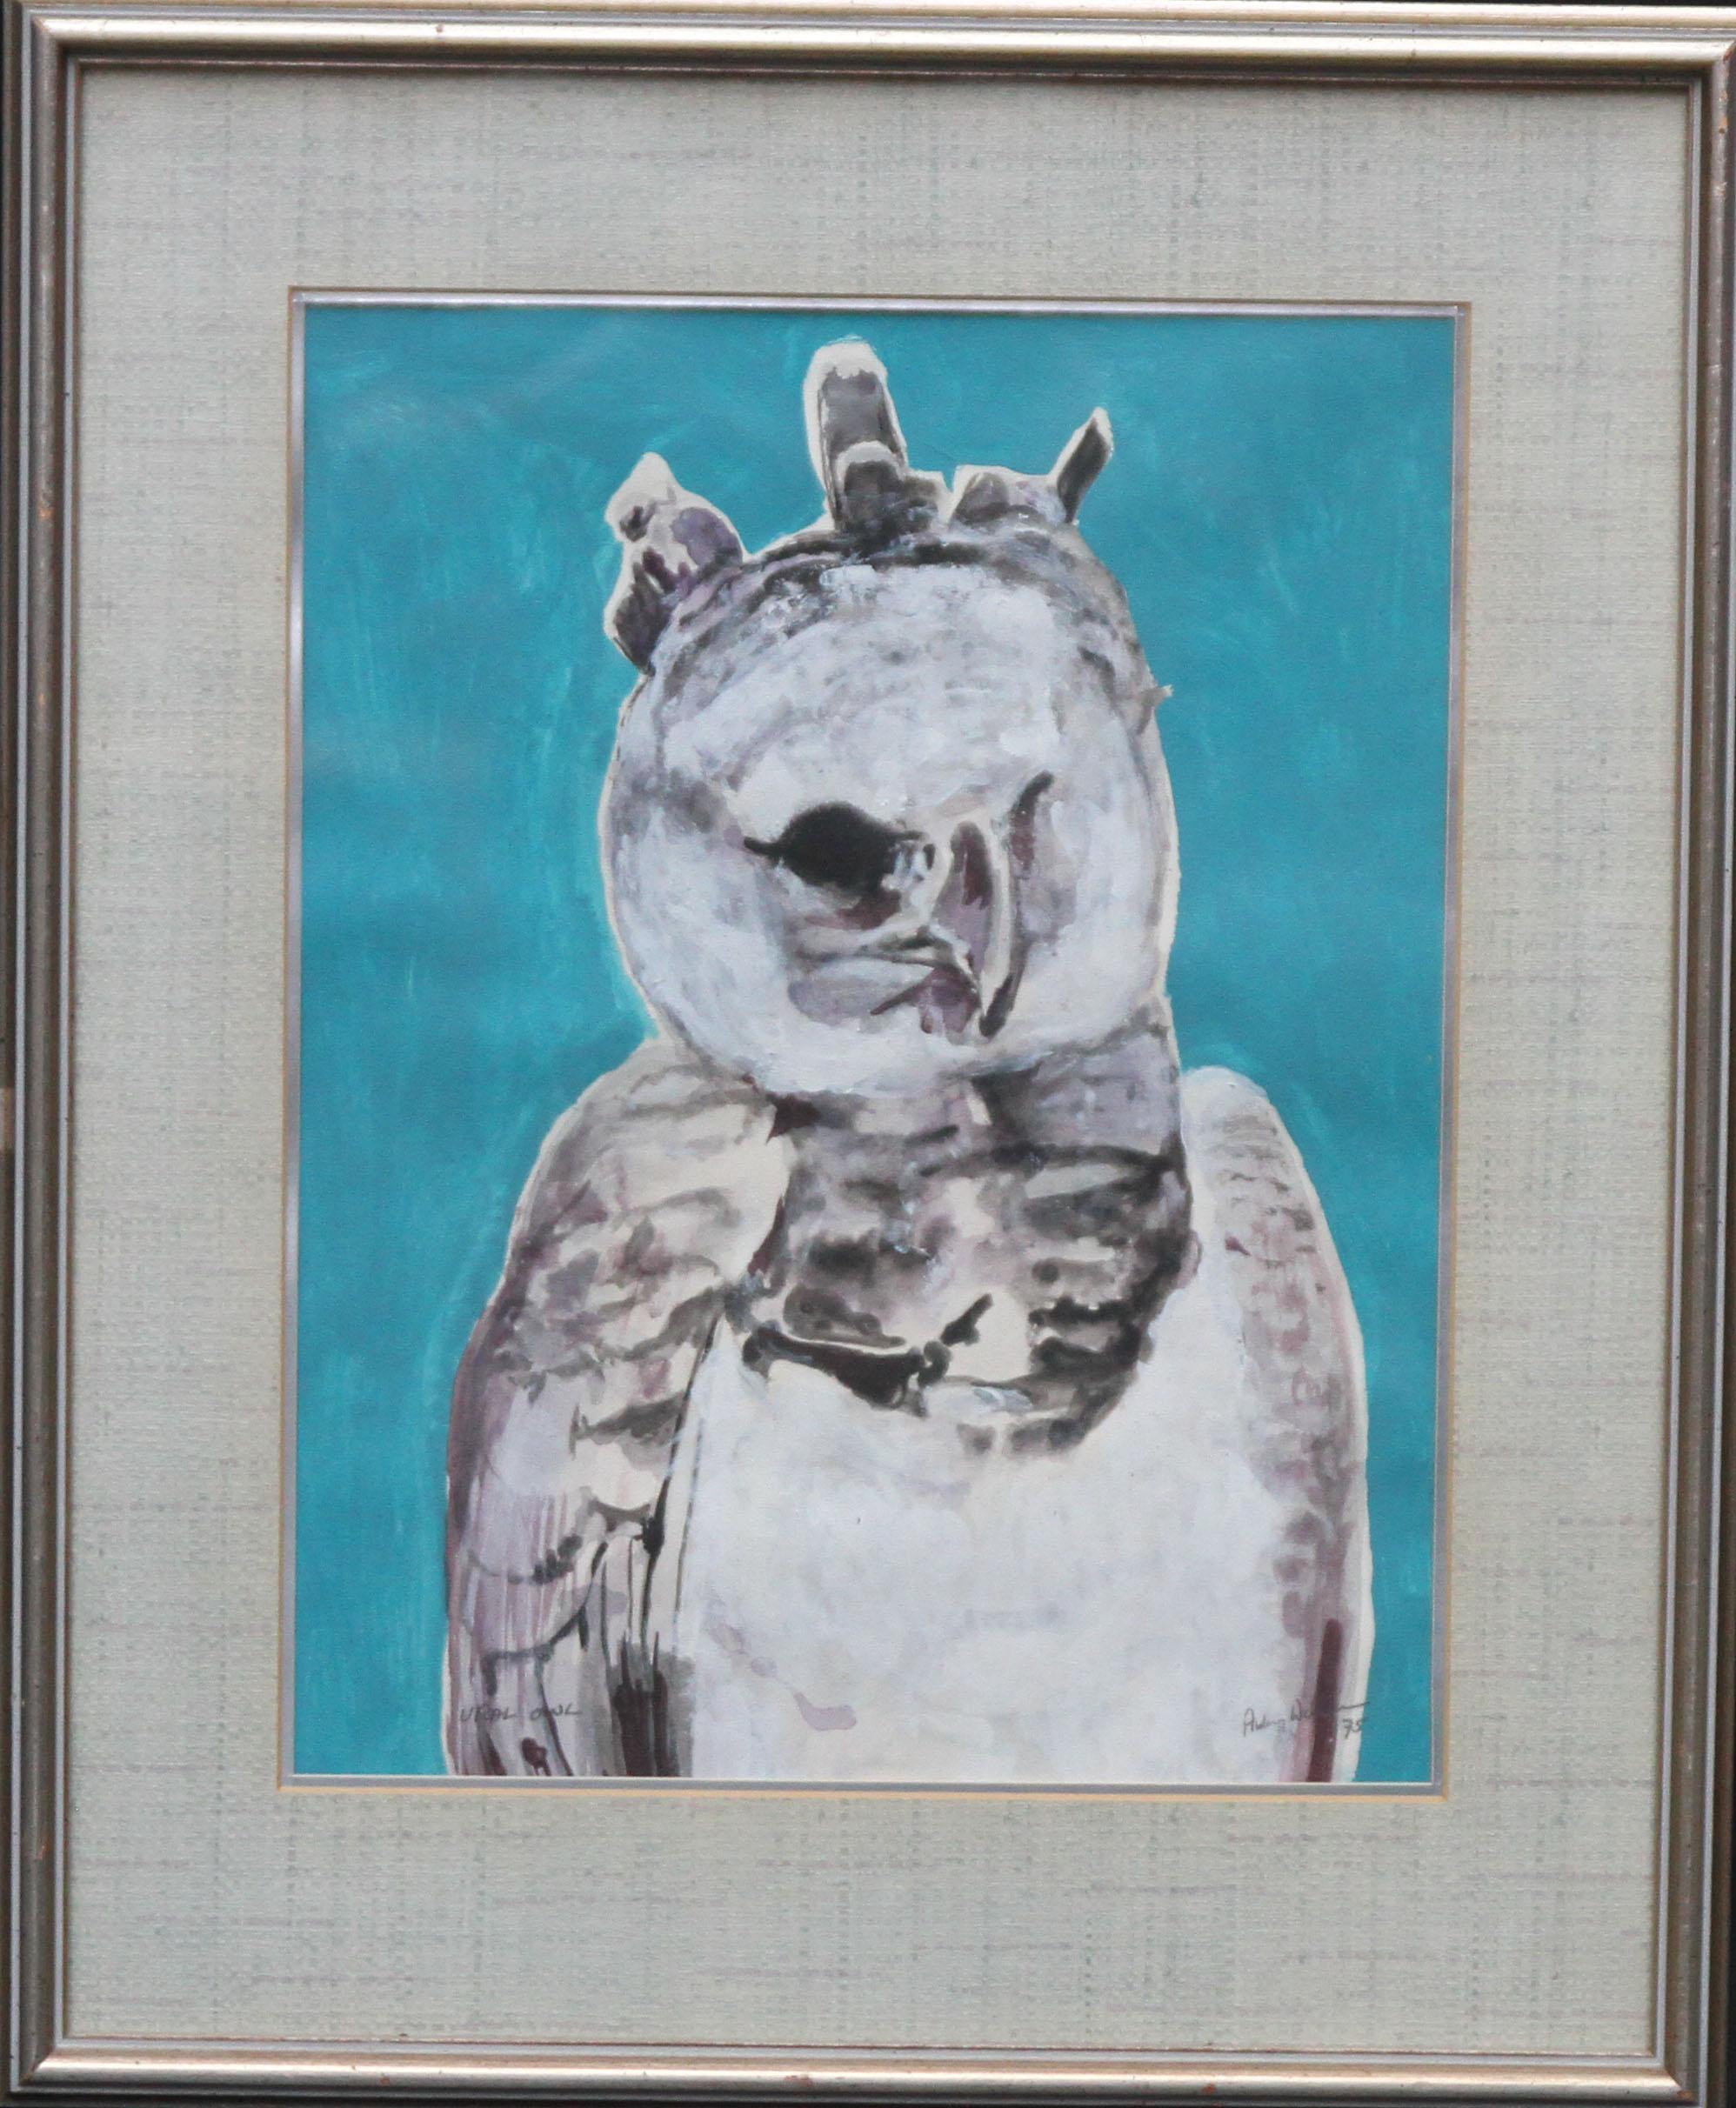 Aubrey Williams Animal Art – Eule 1975 - Expressionistisches Tier-Aquarell-Gemälde in Gouache mit Vogelmotiv